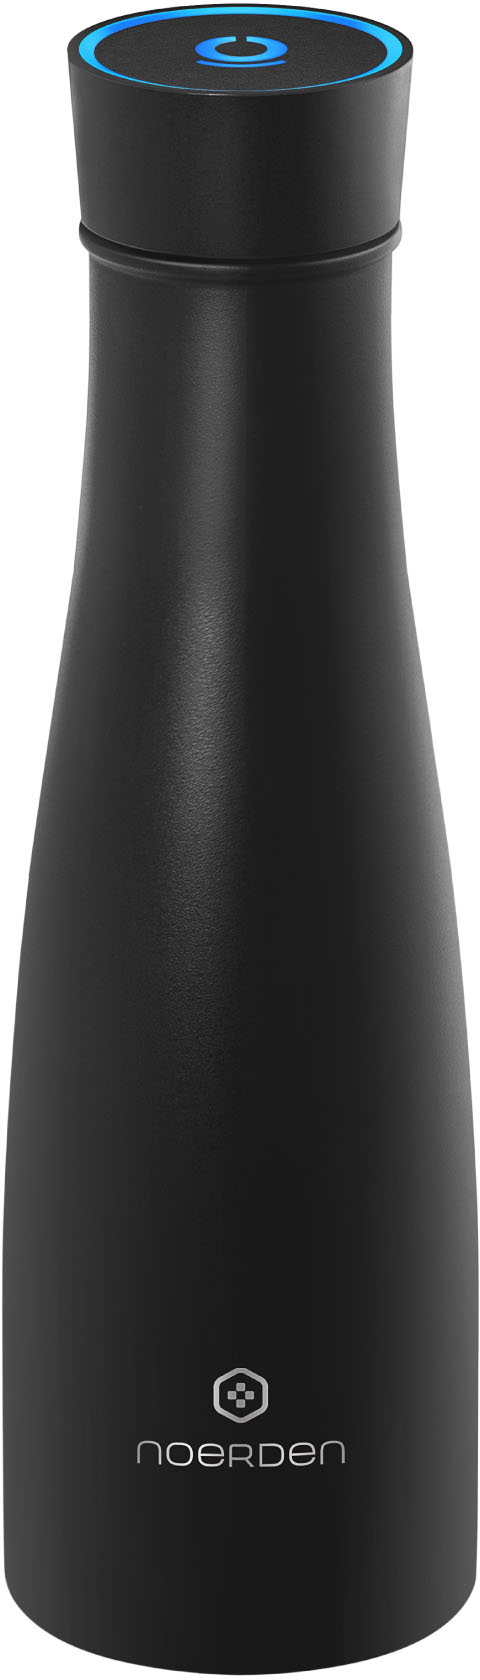 Angle View: NOERDEN - LIZ Smart UV Thermal Bottle 16oz - Black